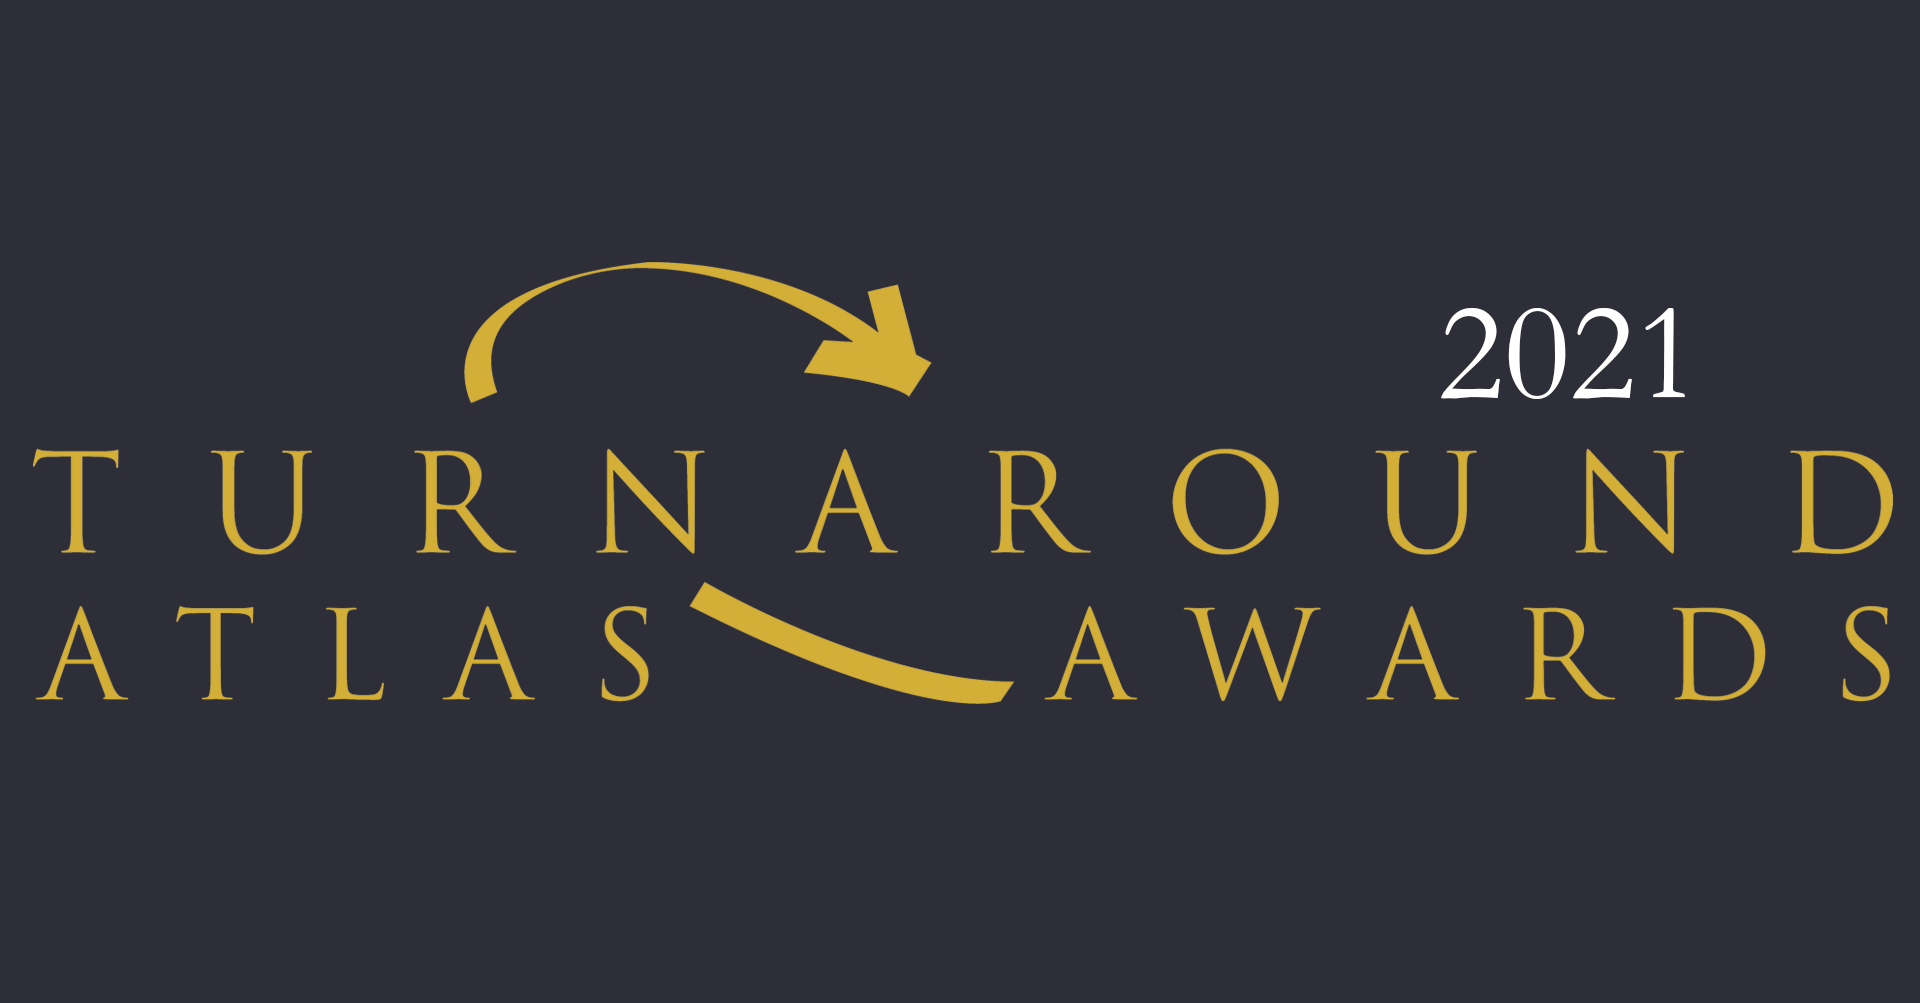 Image for 2021 Turnaround Atlas Awards